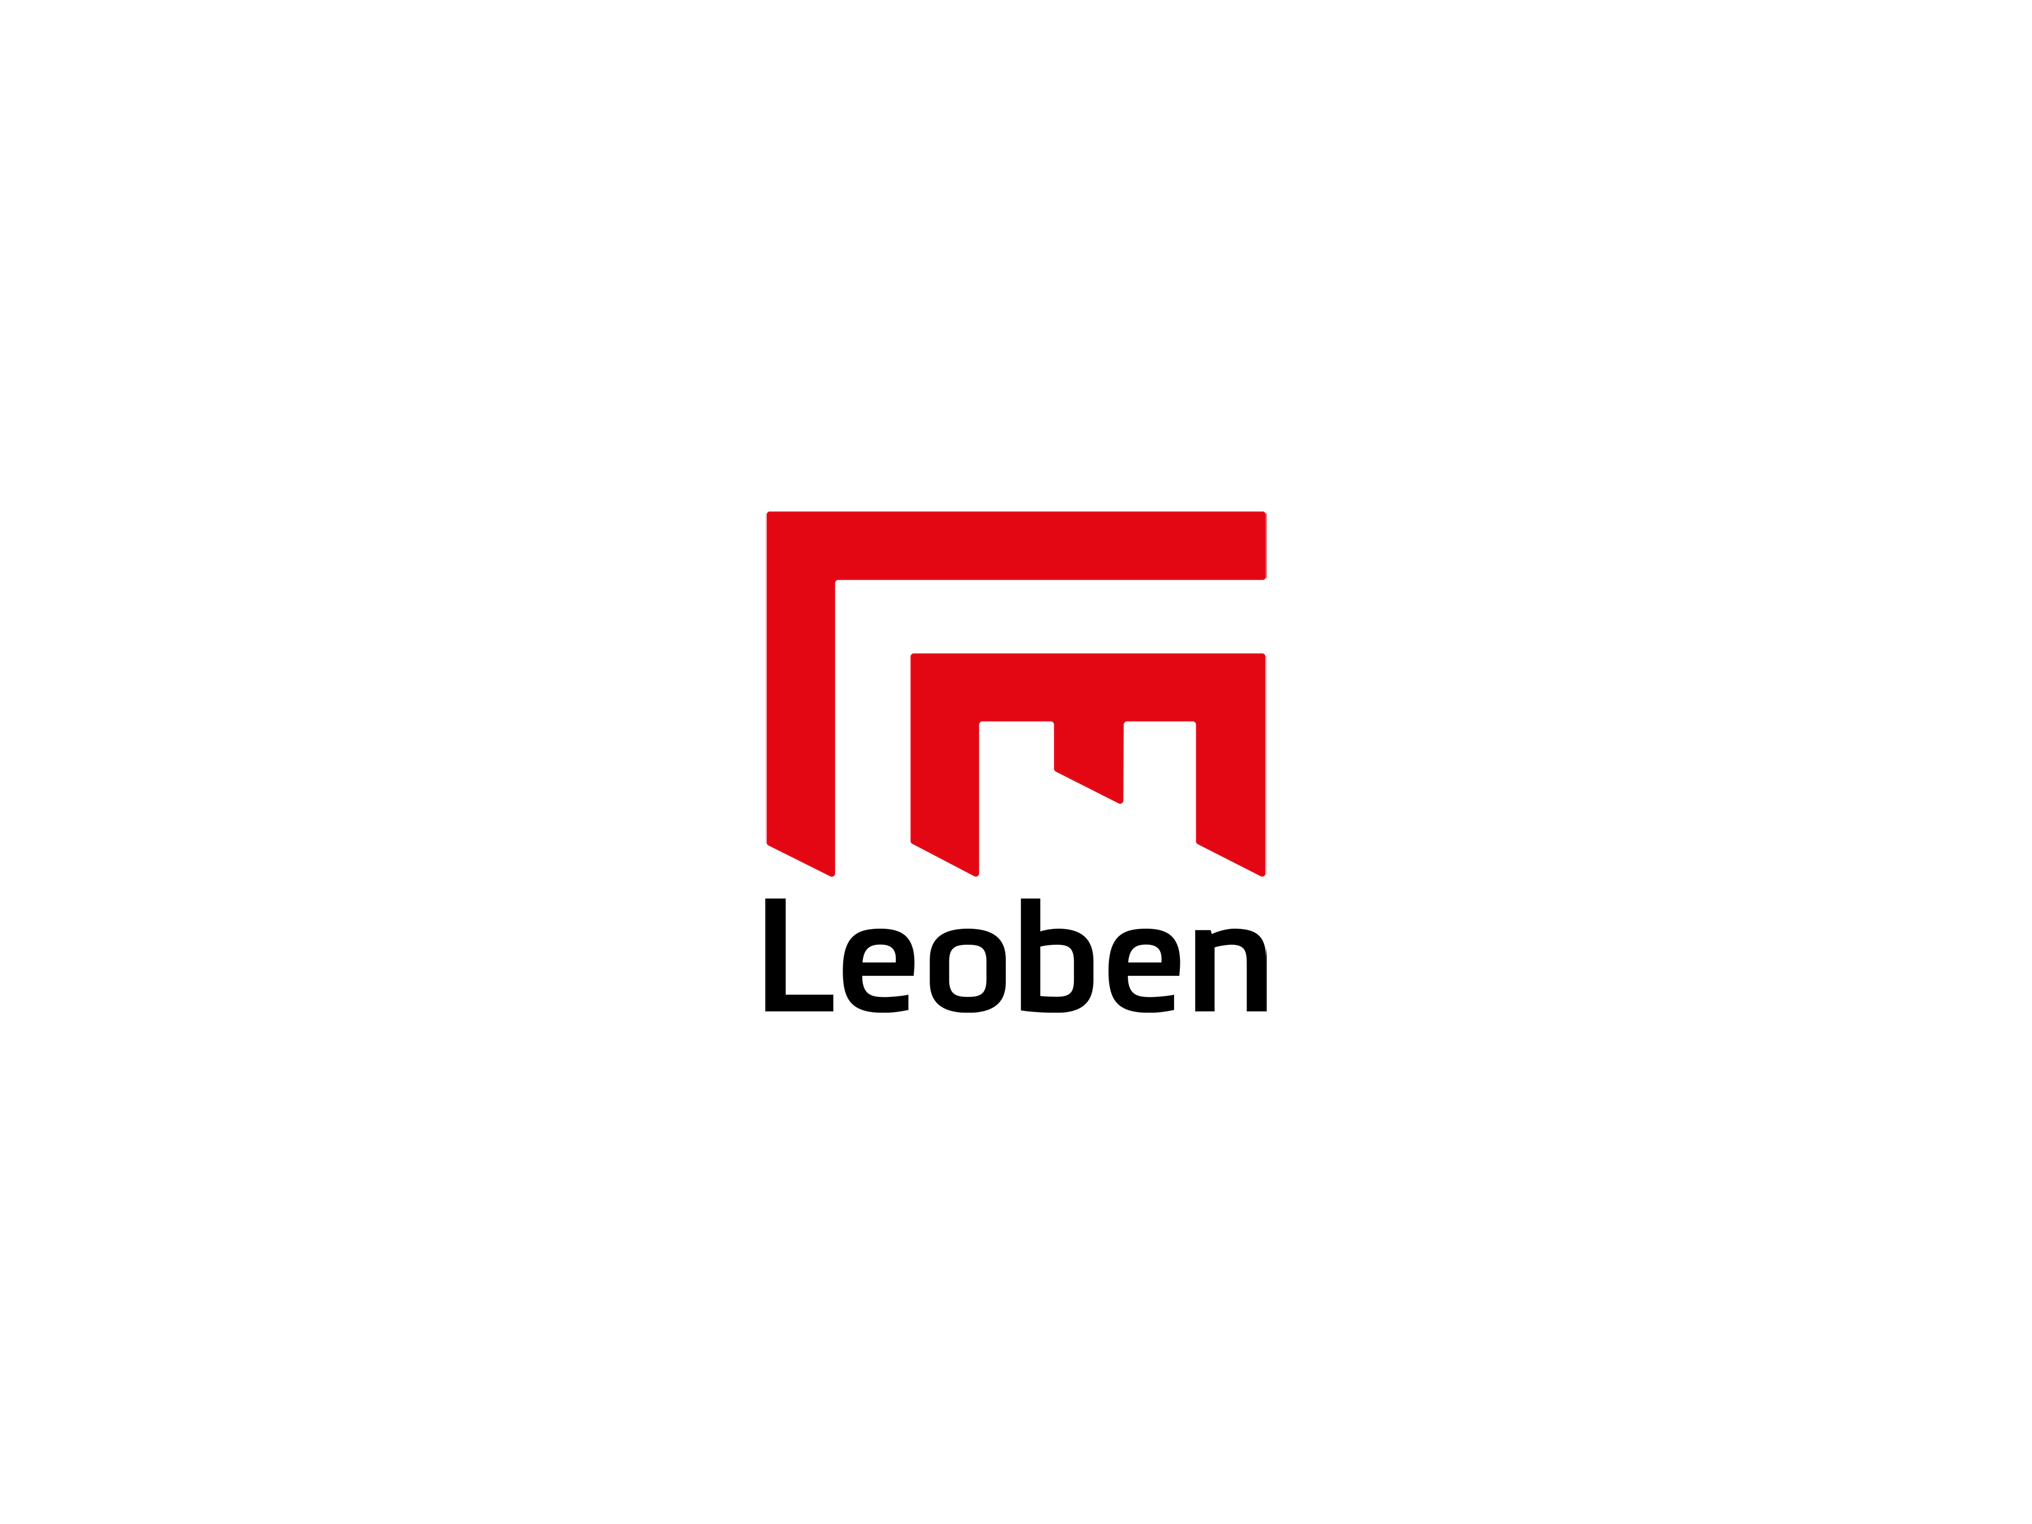 Logo der Stadt Leoben